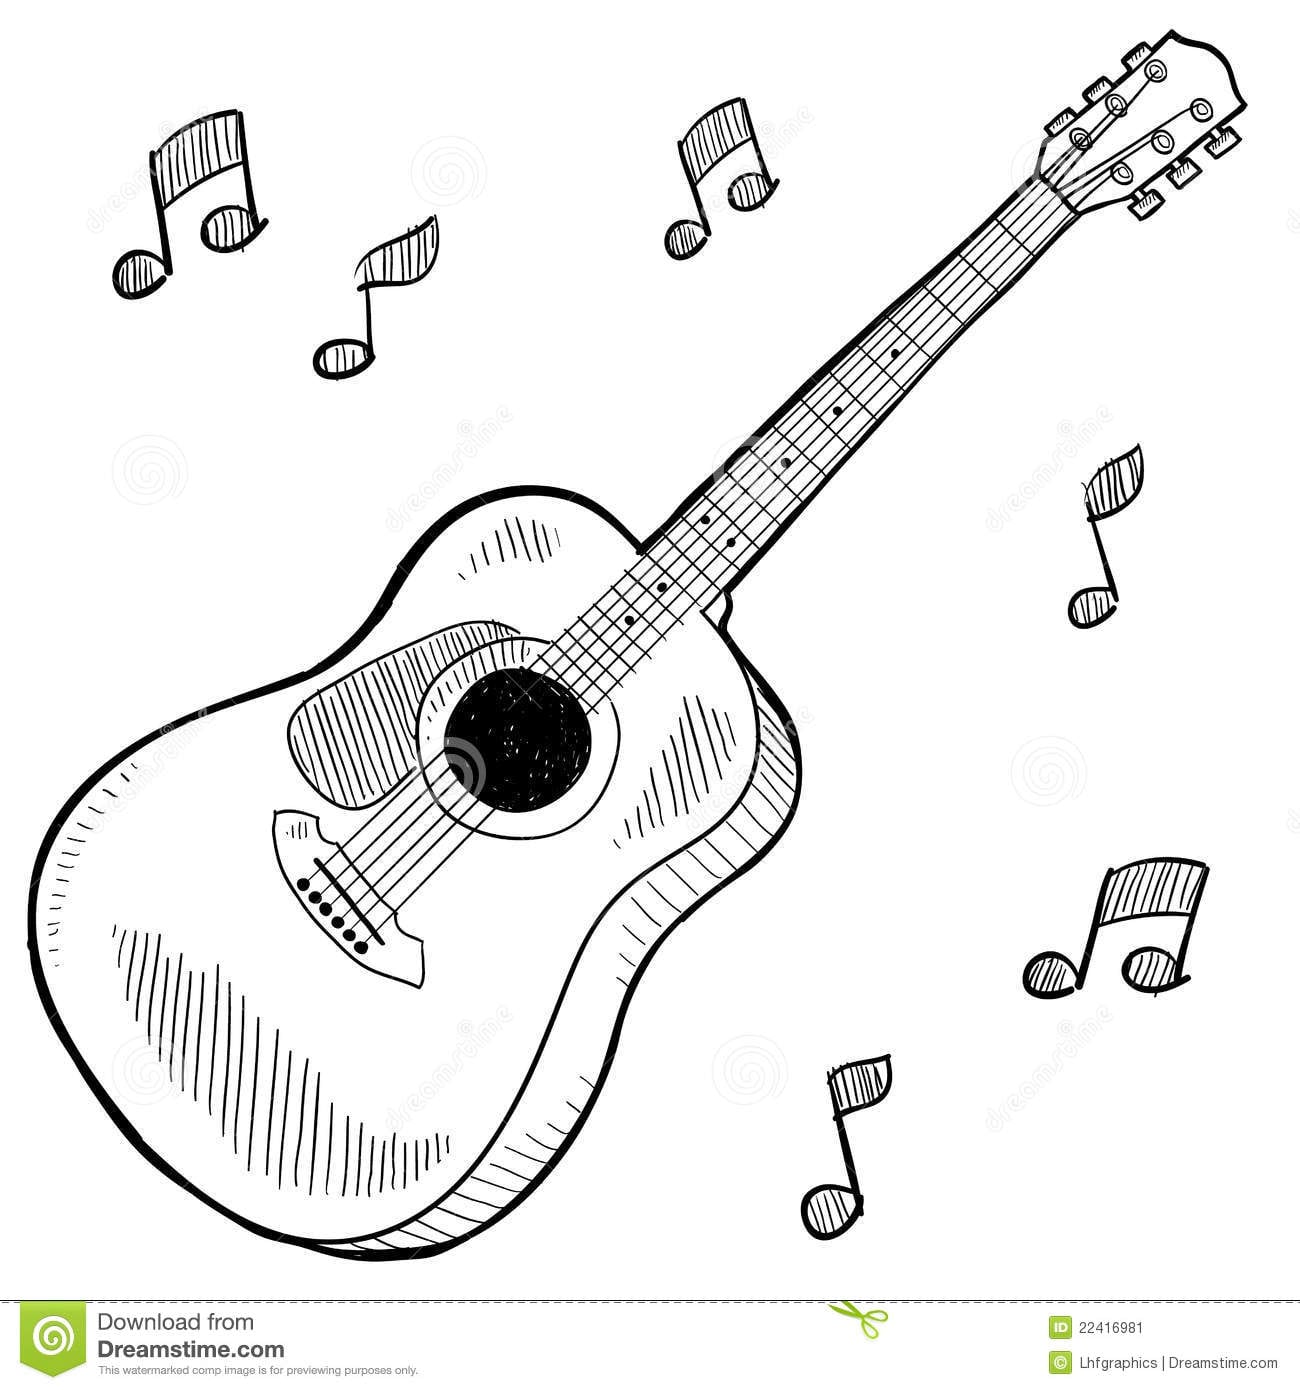 Desenho Da Guitarra AcÃºstica Imagem De Stock